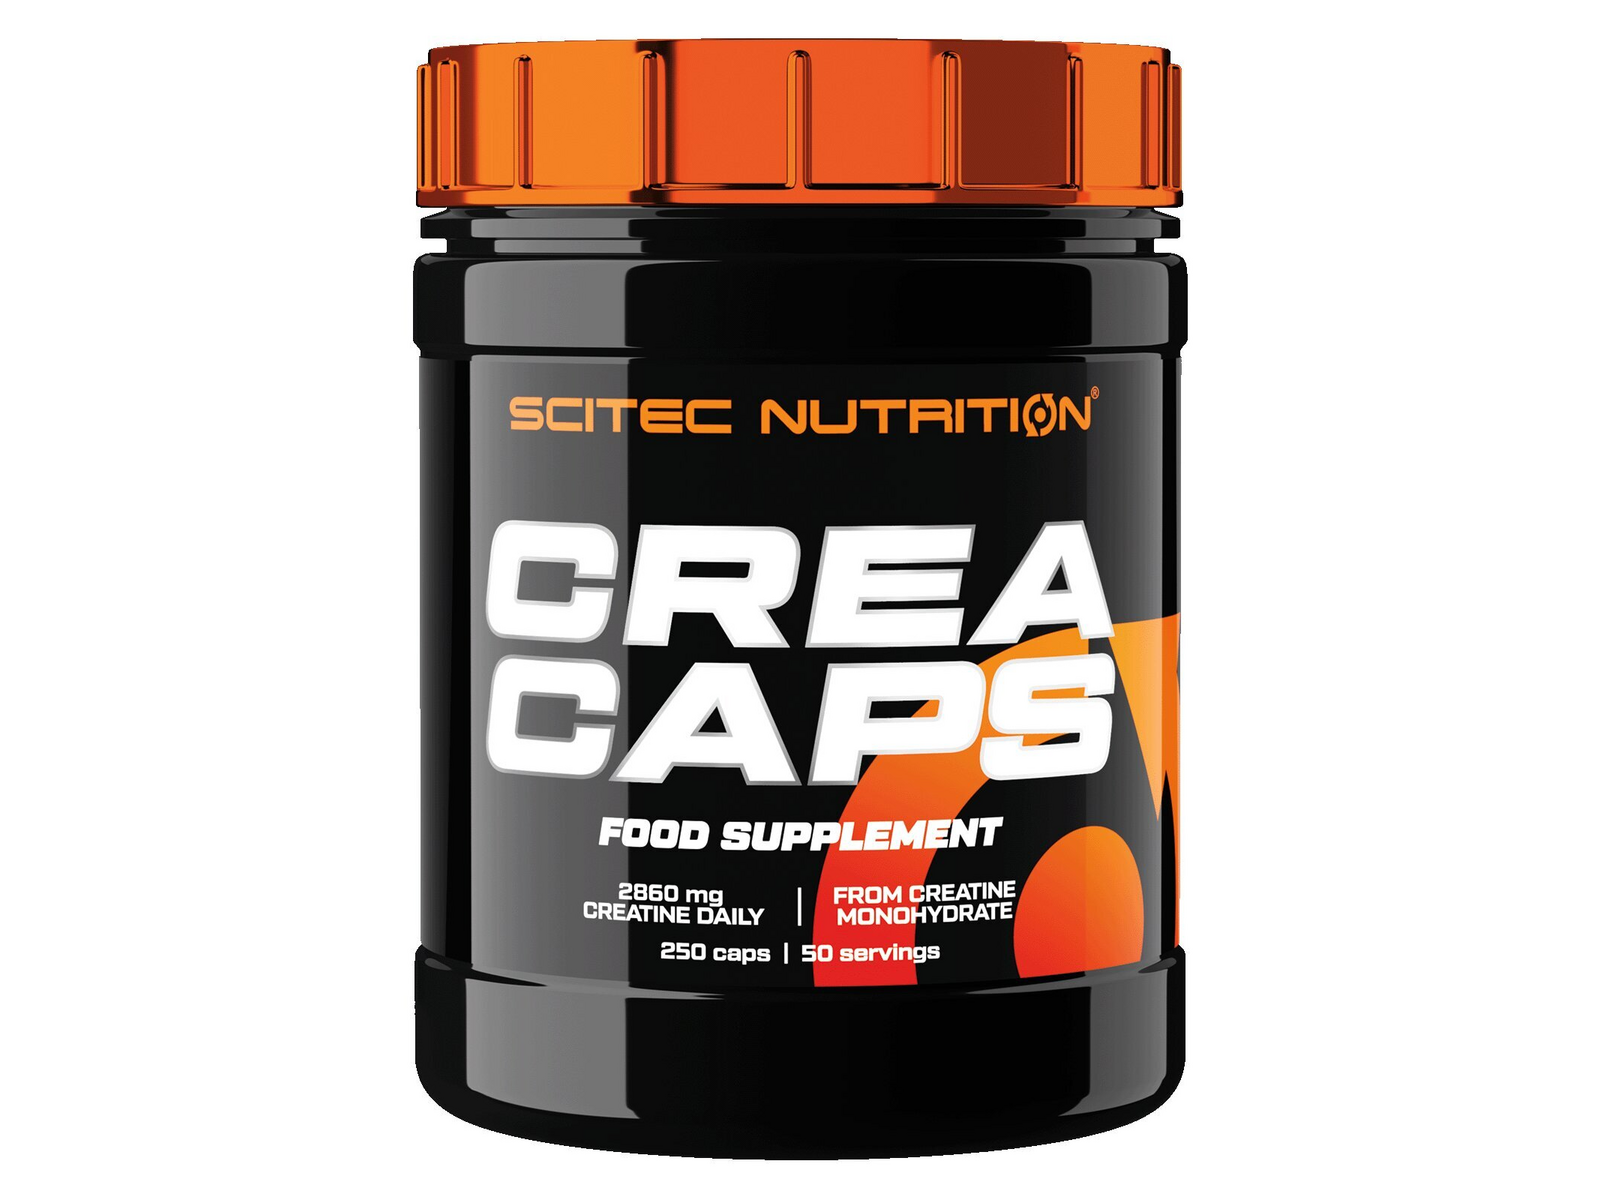 CREA Caps - 250 Capsules / Scitec Nutrition